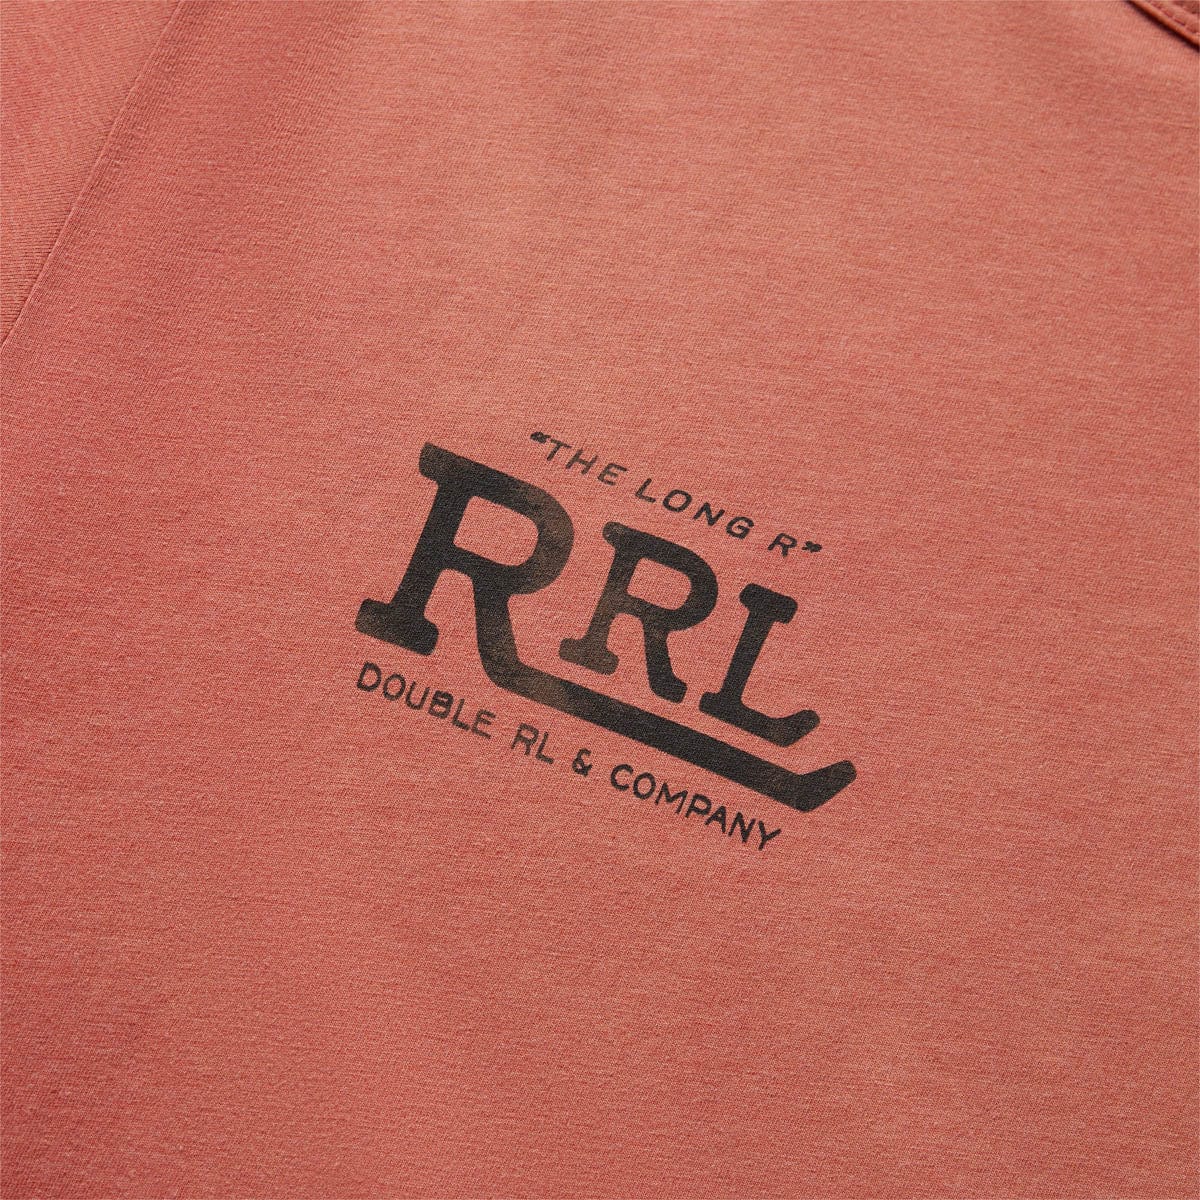 RRL T-Shirts S/S COTTON BLEND GRAPHIC T-SHIRT